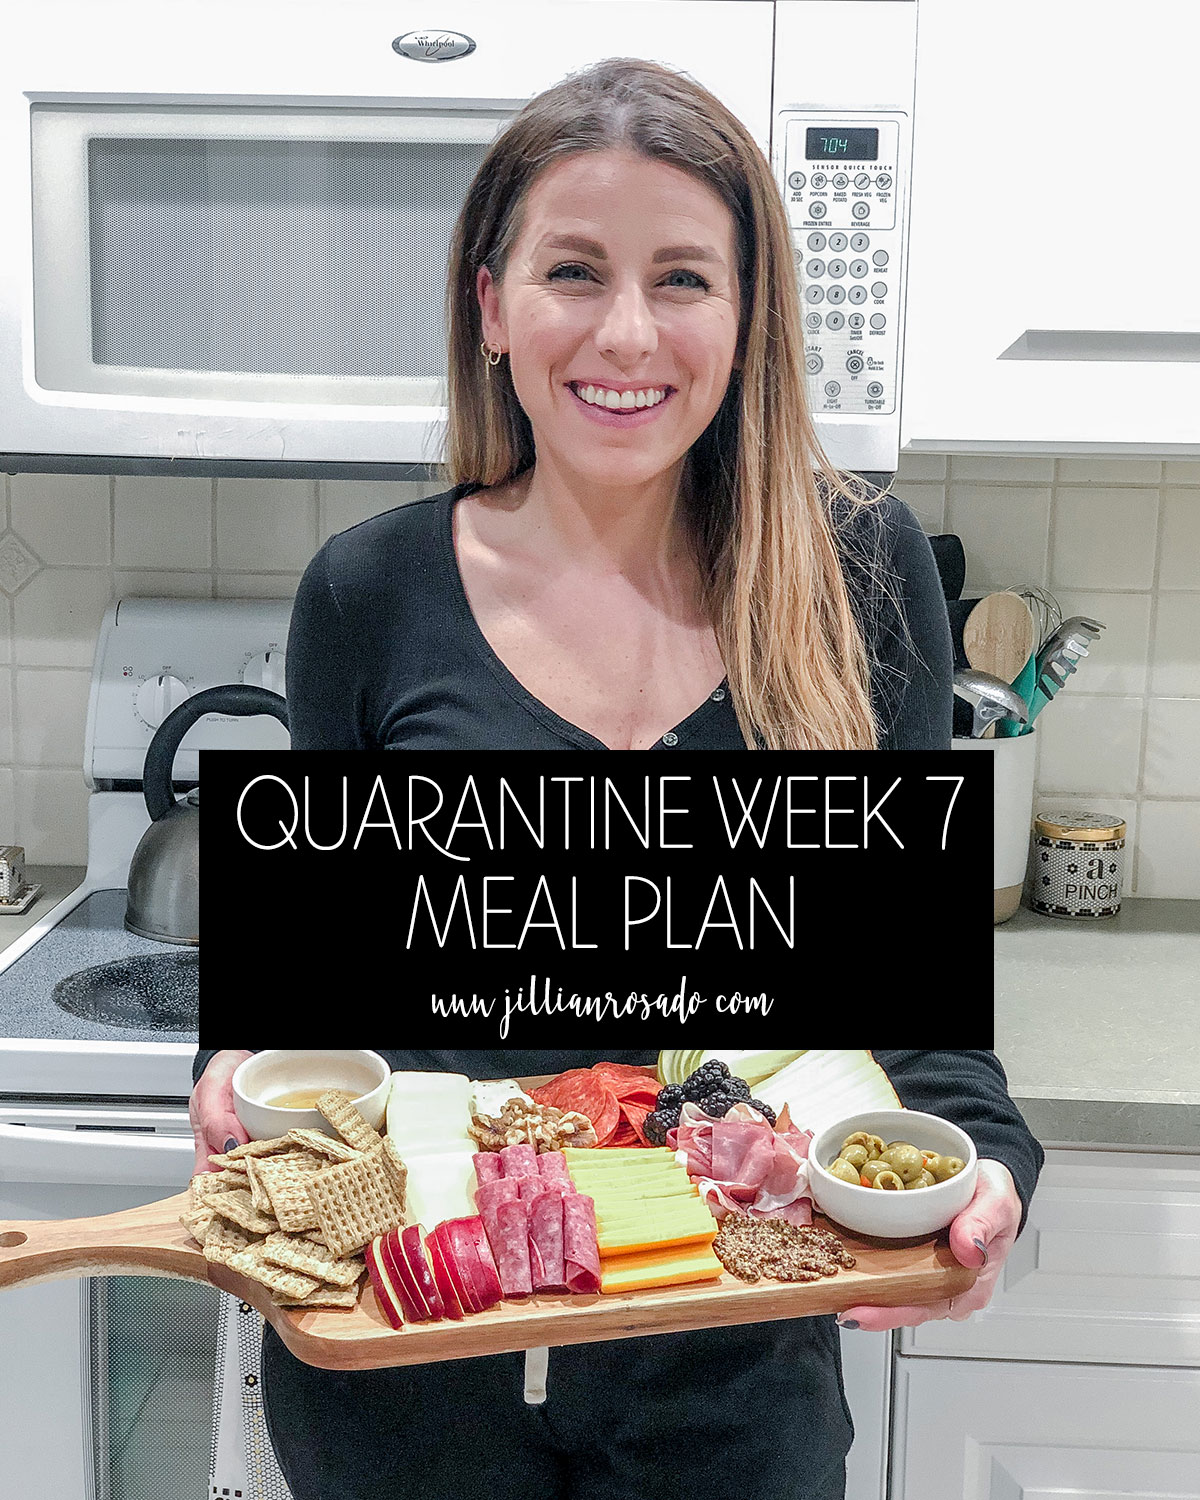 Quarantine Week 7 Meal Plan